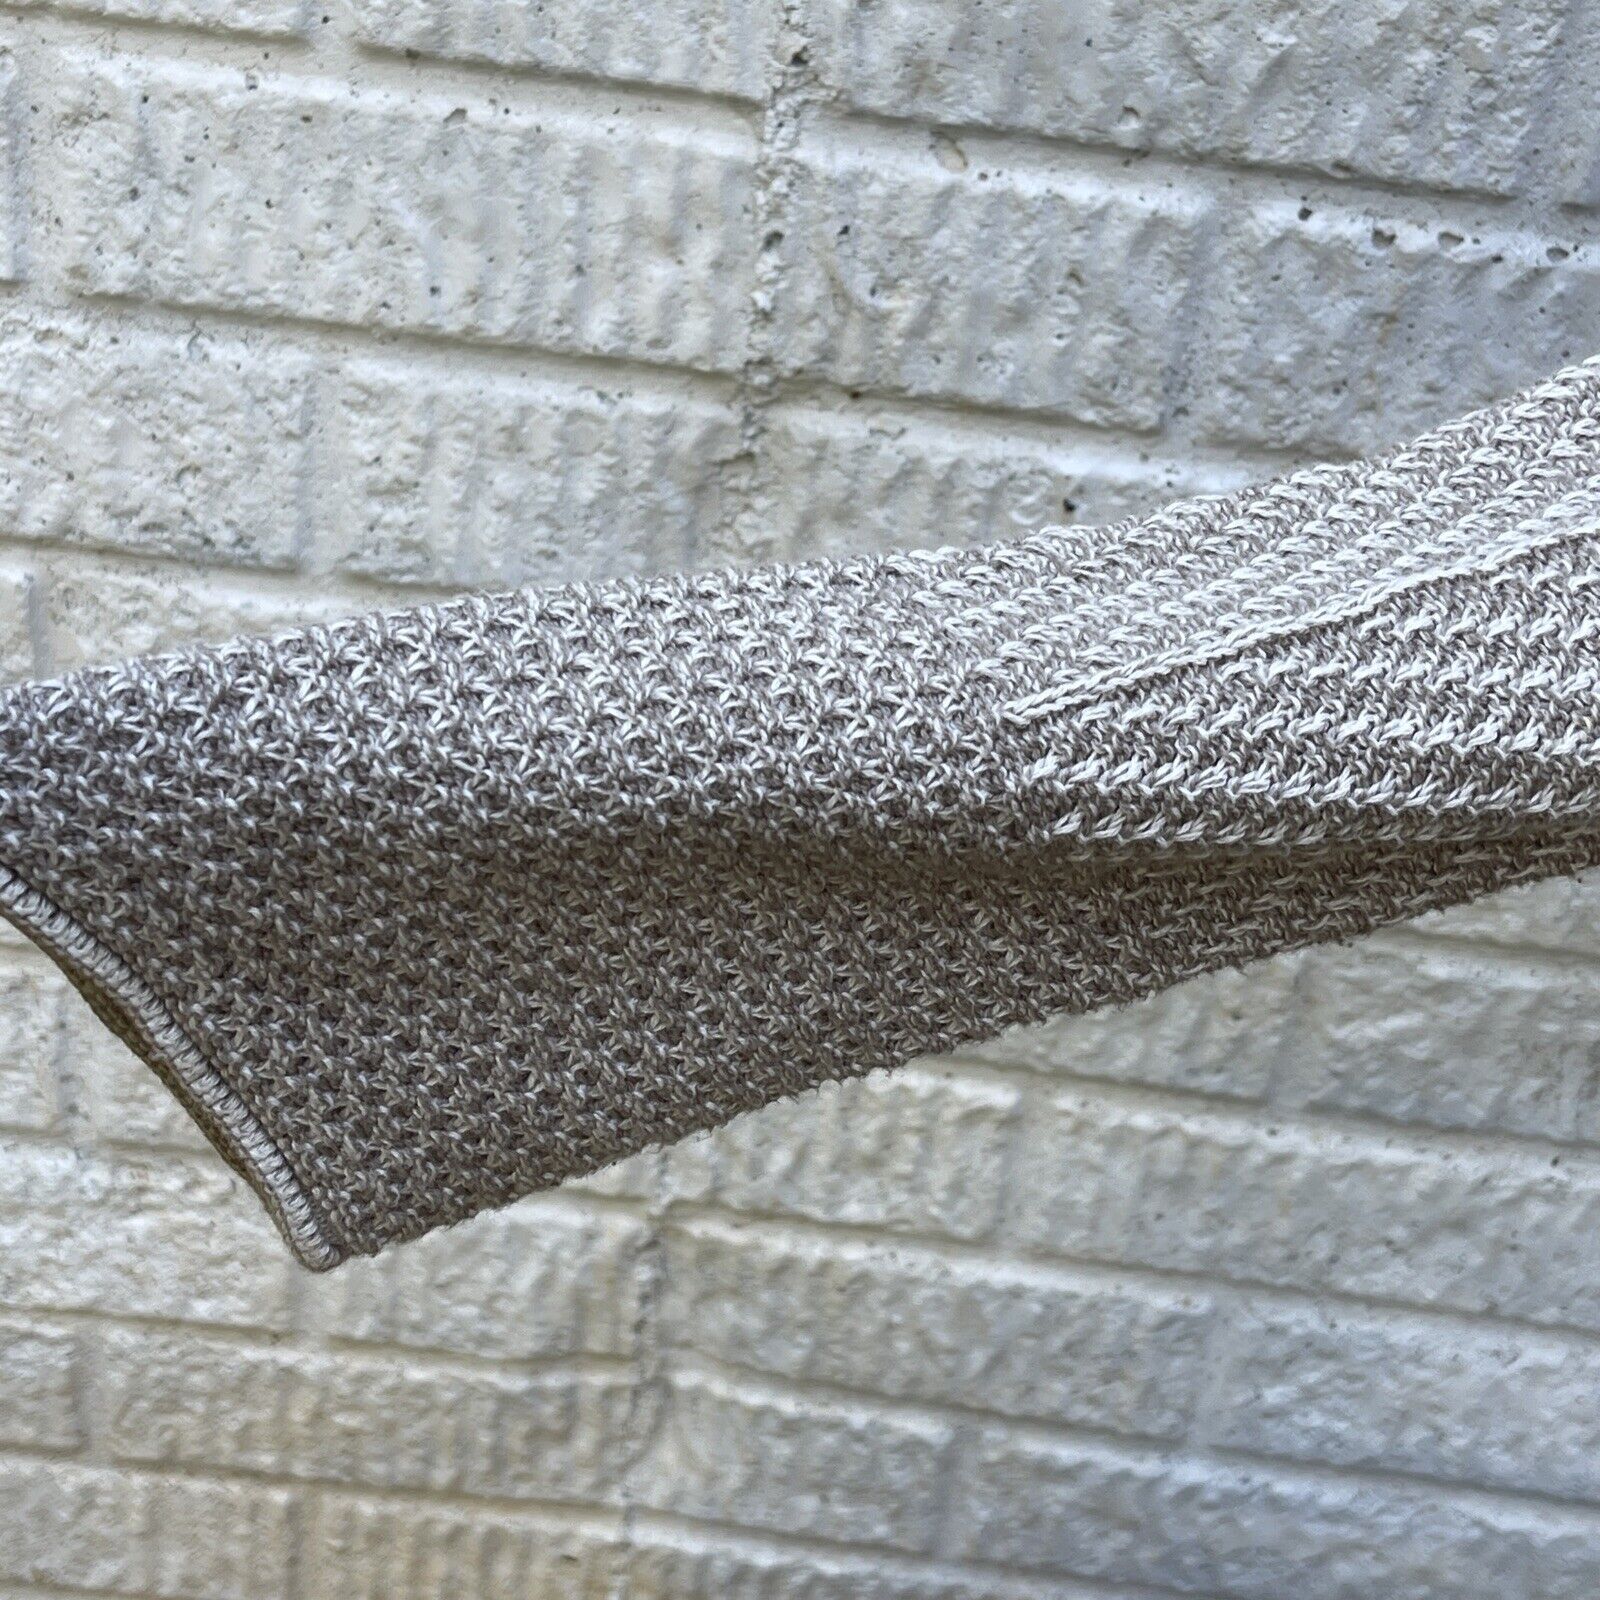 Kim Rogers Large Knit Light Tan Long Sweater - image 4